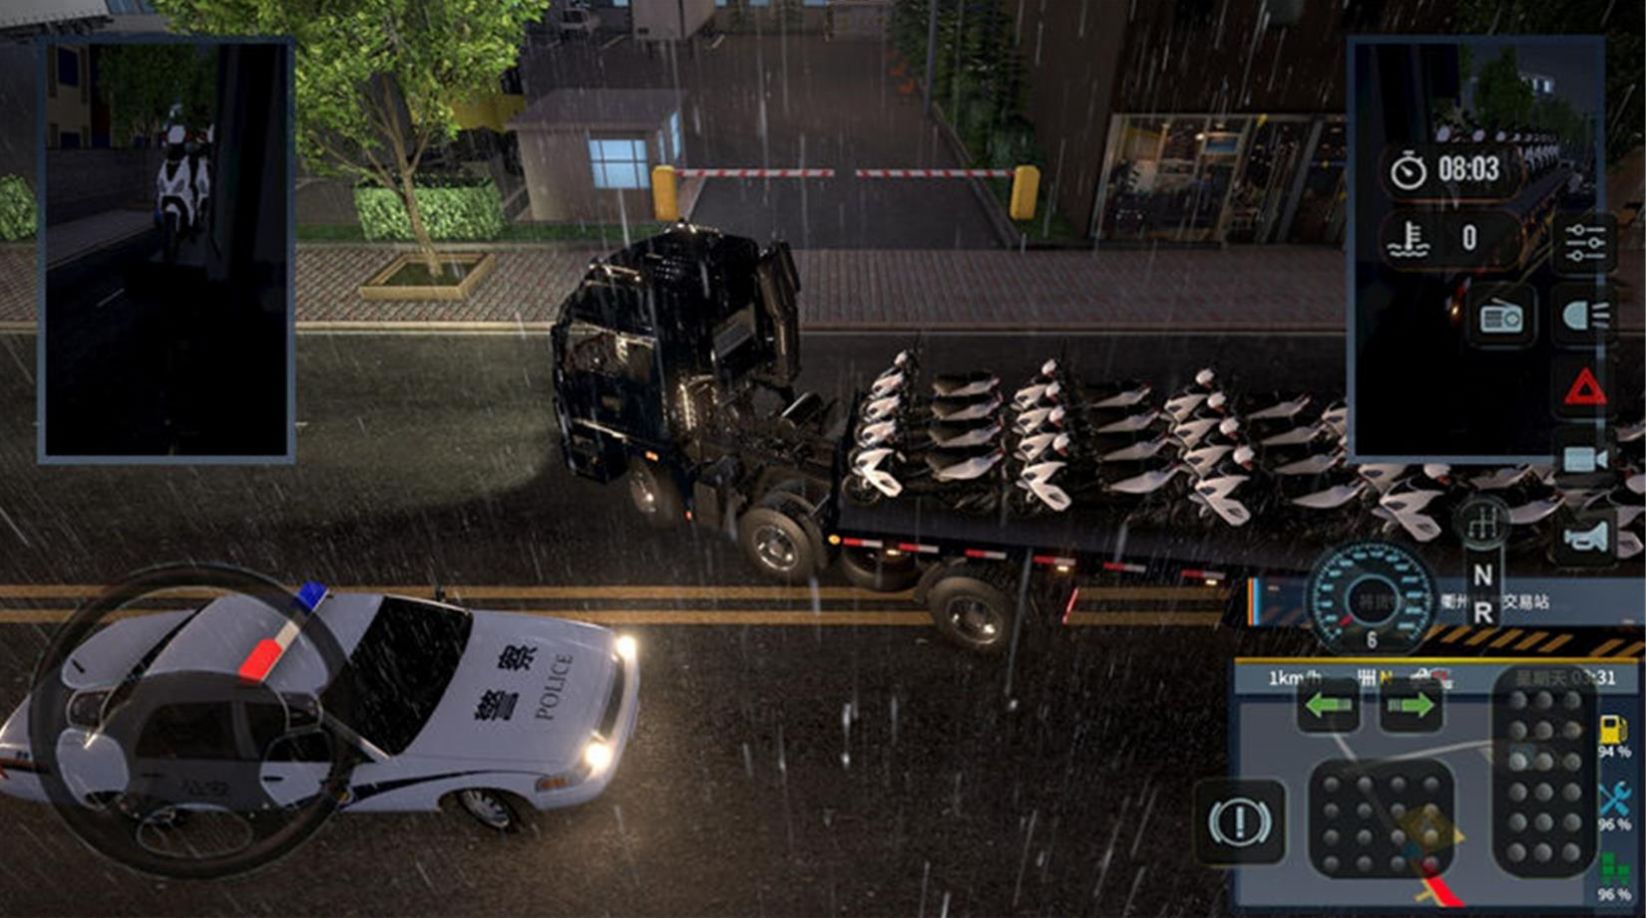 亚洲卡车模拟游戏图1